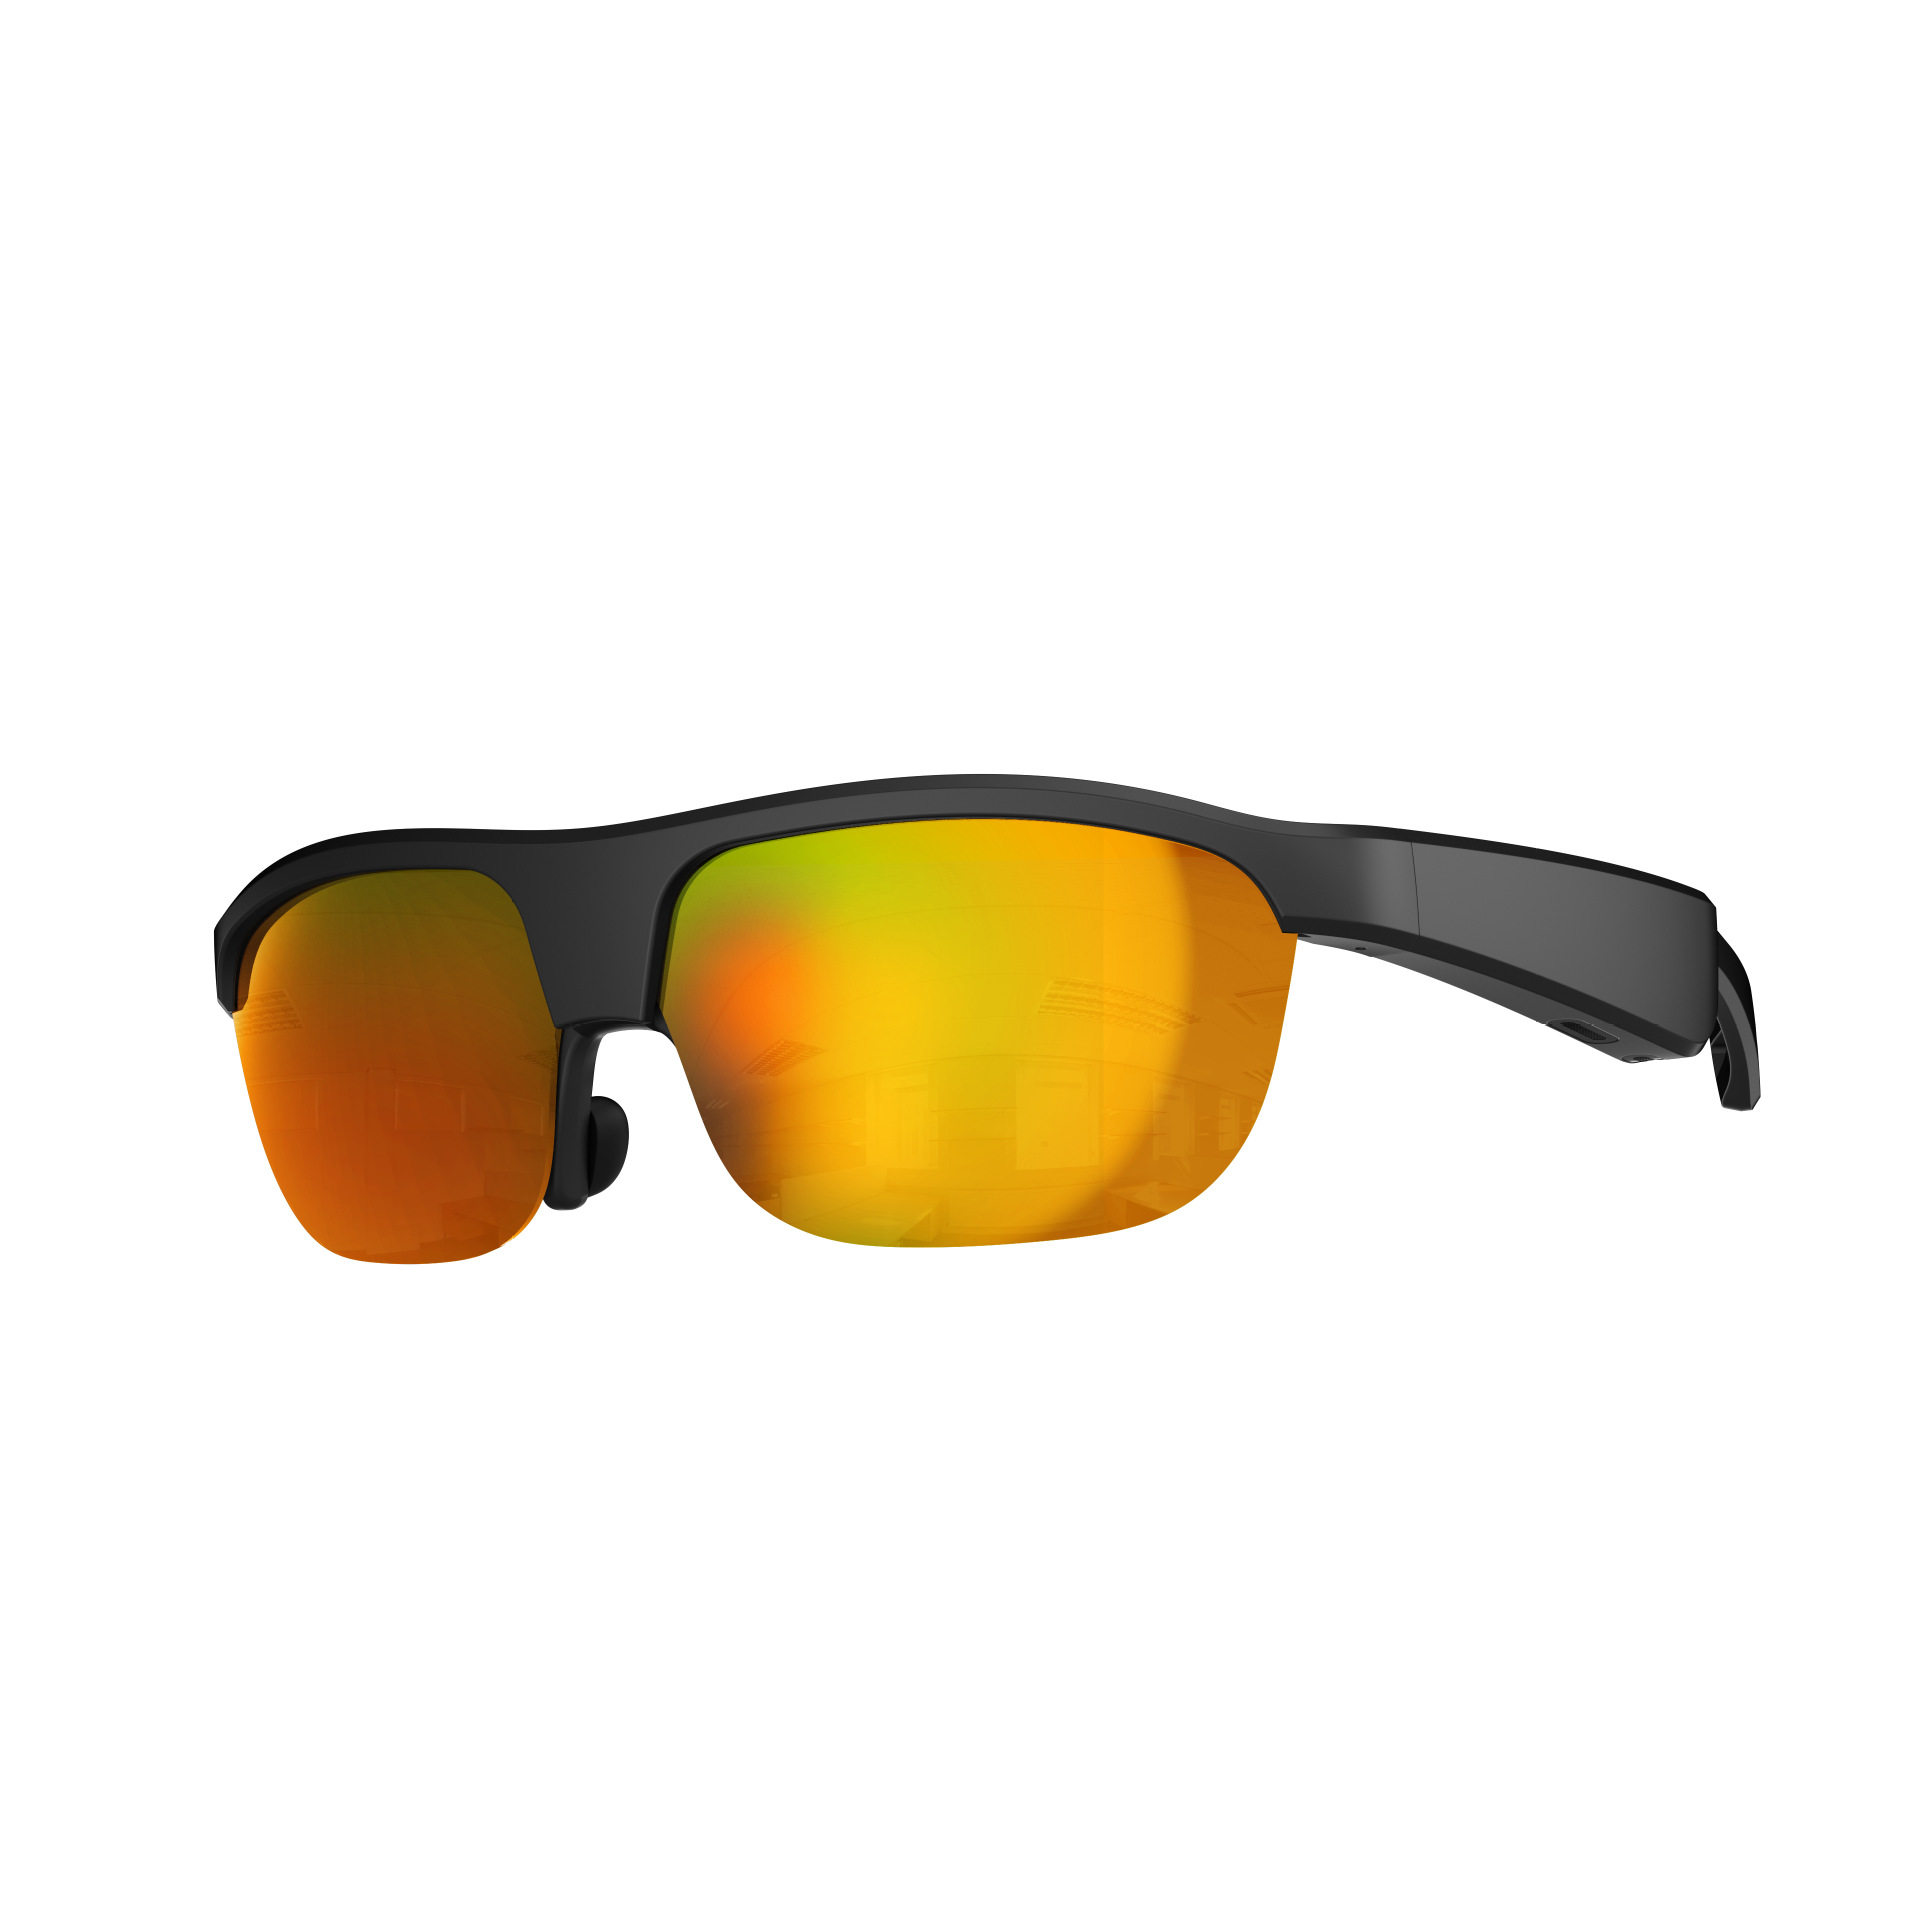 Sunglasses Outdoor Bluetooth Brille Orange Bluetooth Smart Navigation, Musik, Open-ear Freisprechen, BRIGHTAKE -